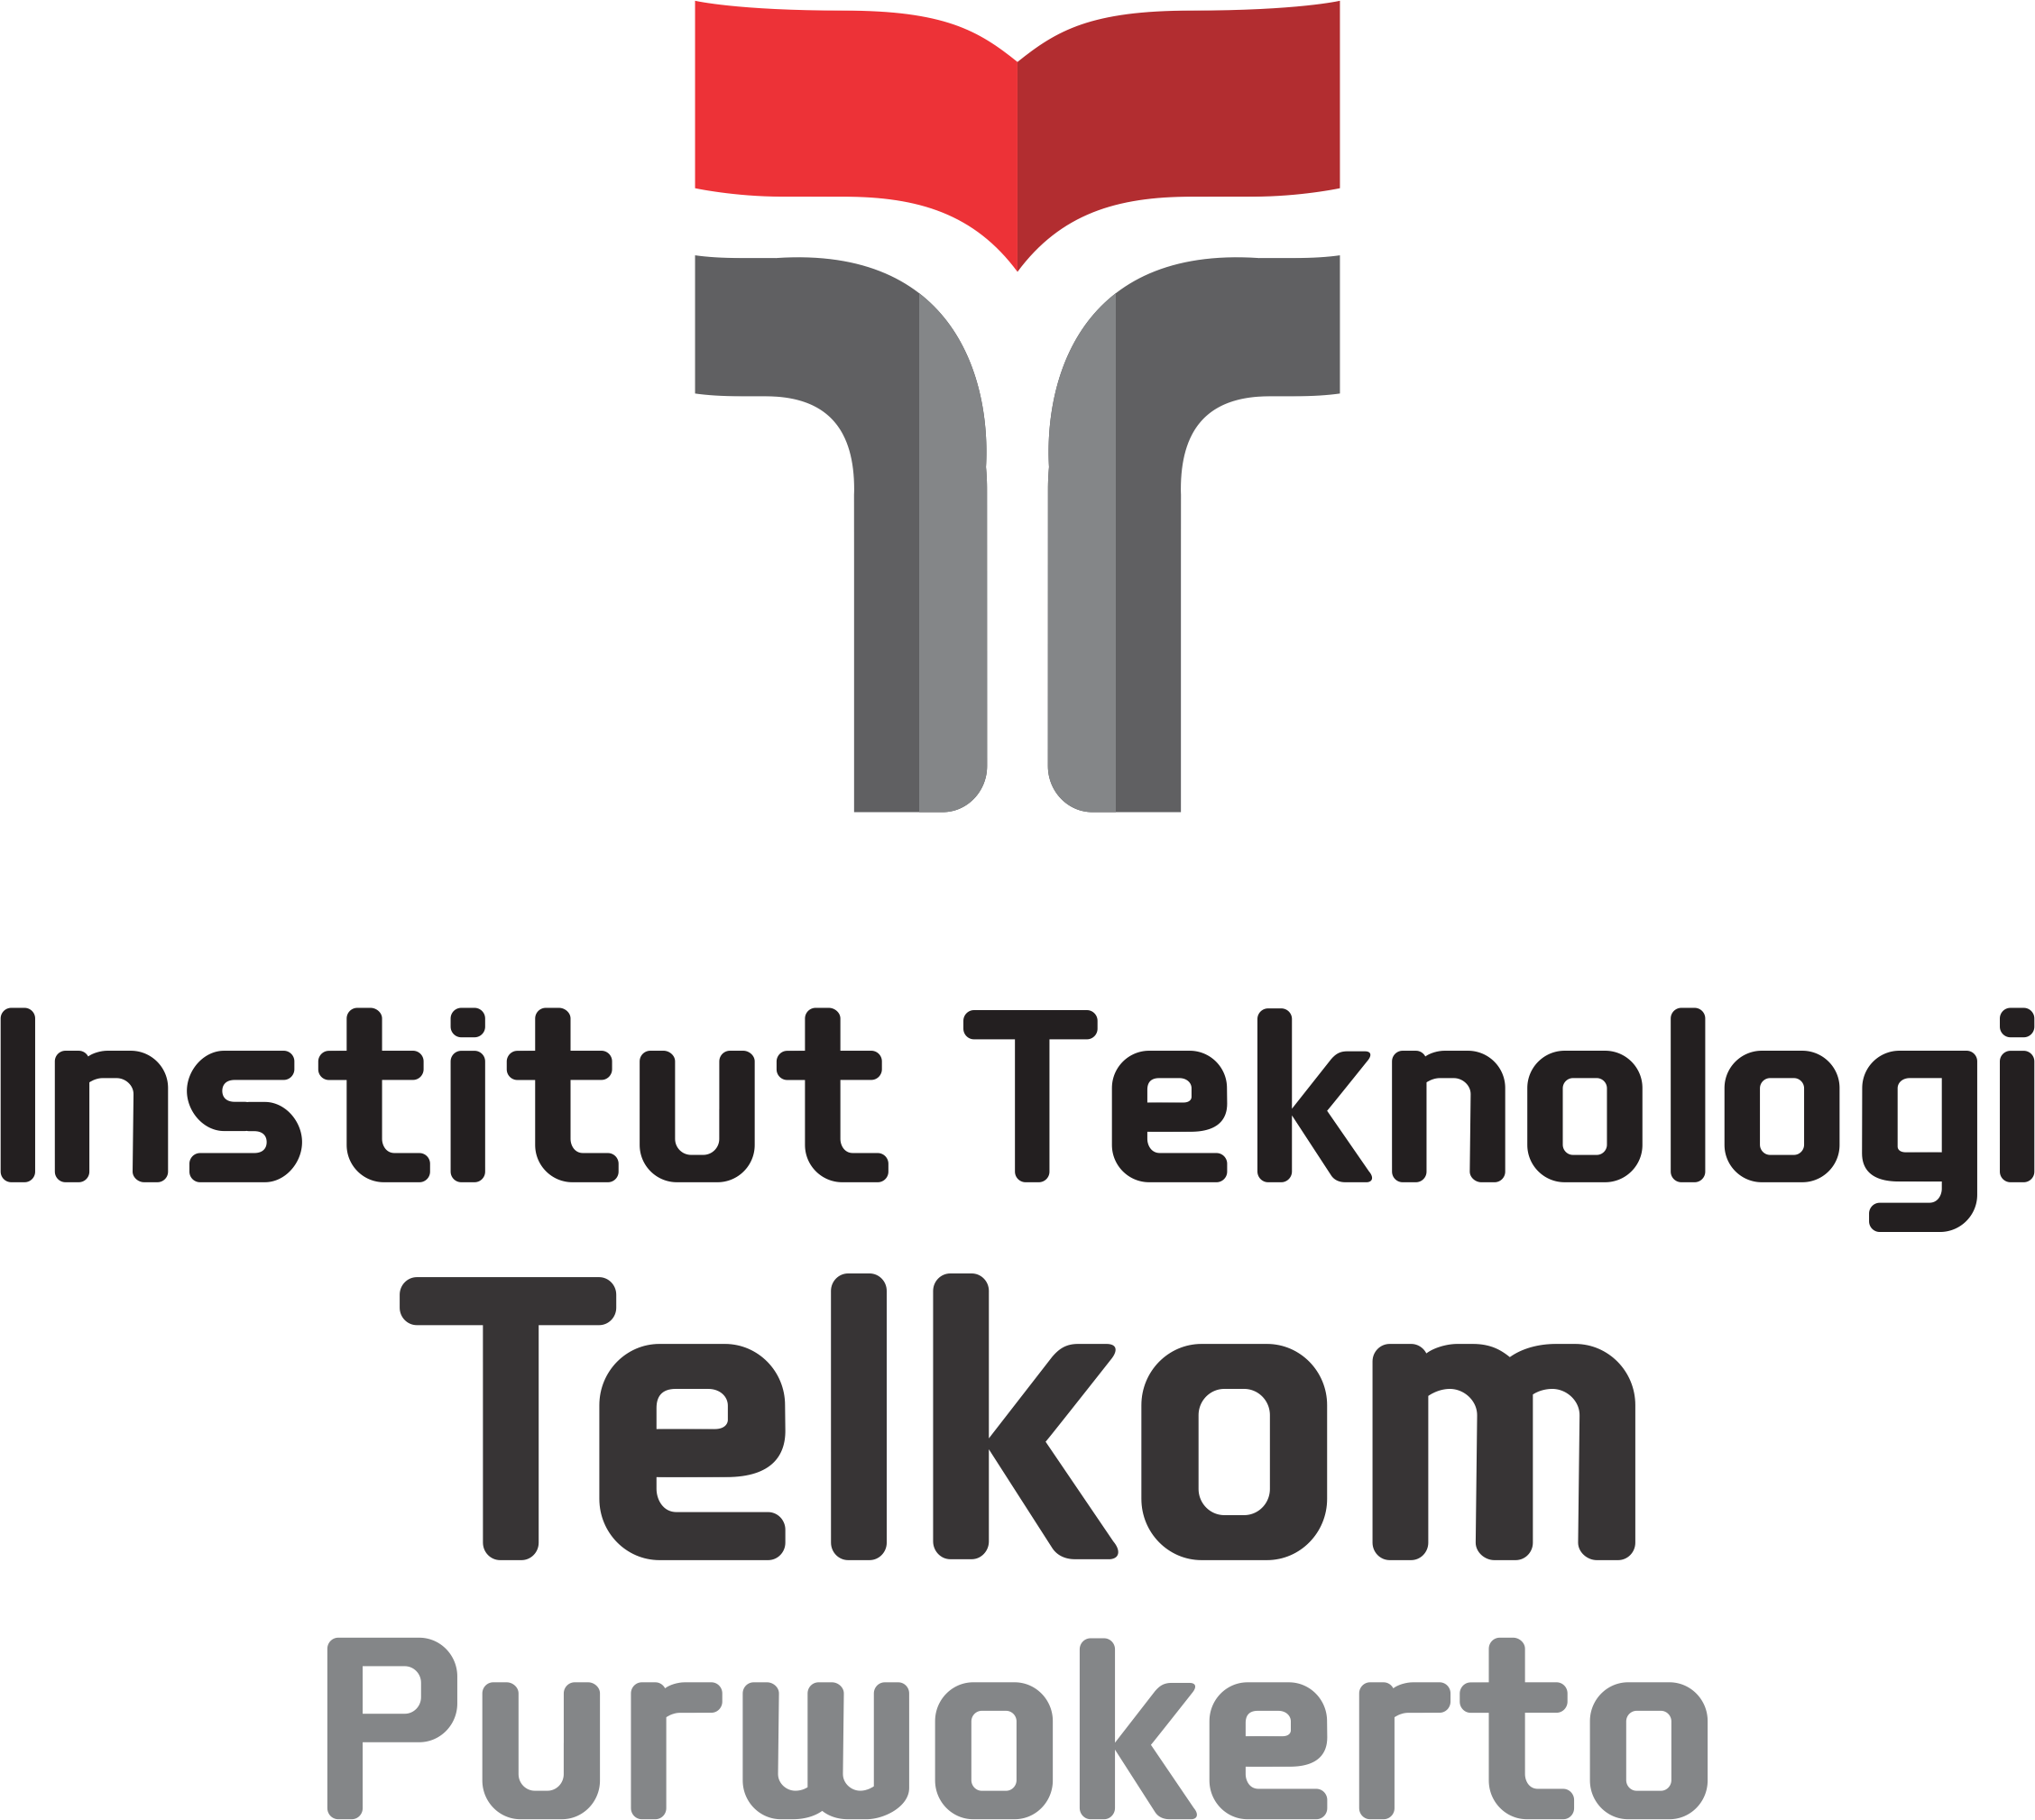 Institut Teknologi Telkom Purwokerto